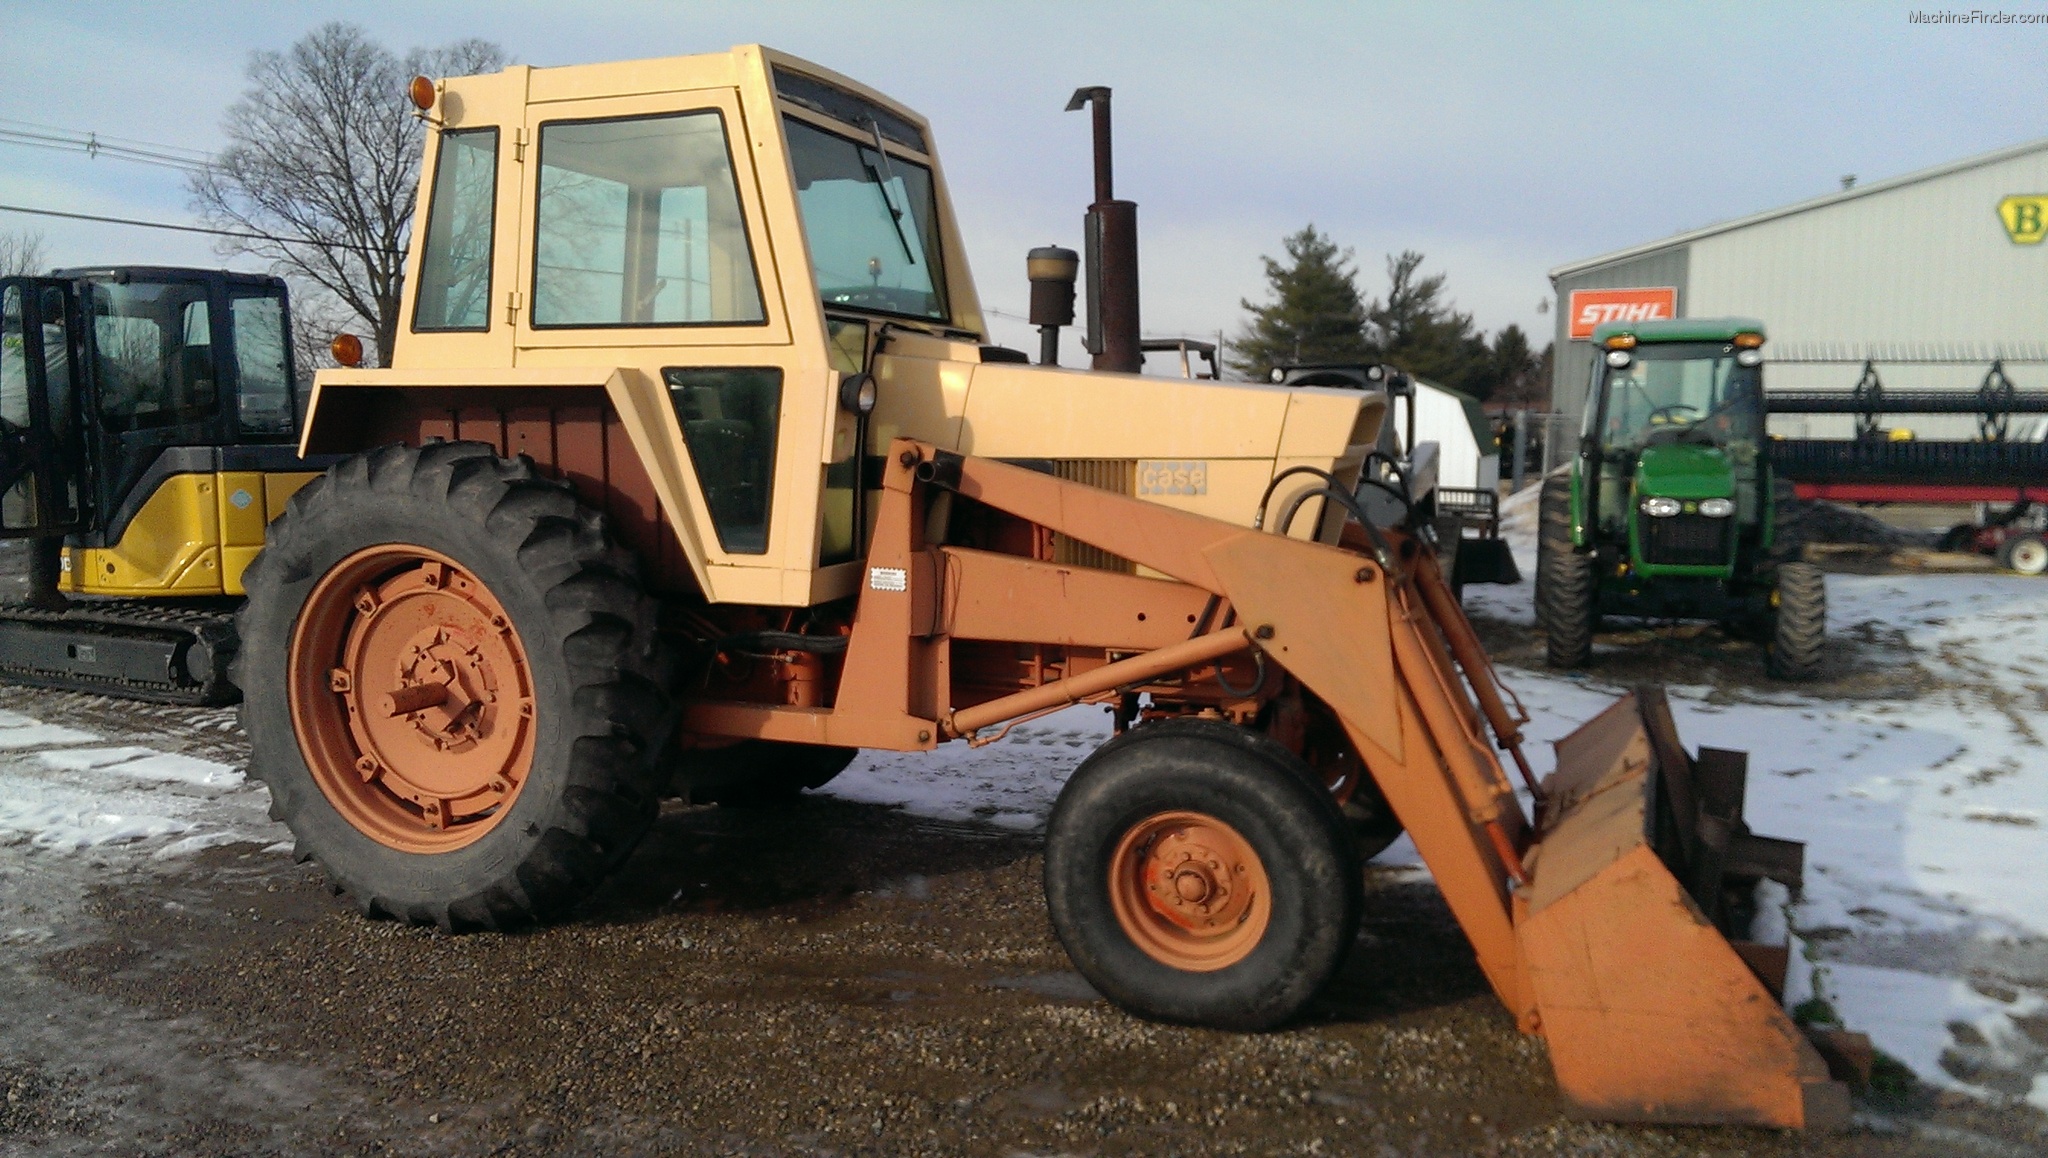 1970-case-770-tractors-utility-40-100hp-john-deere-machinefinder